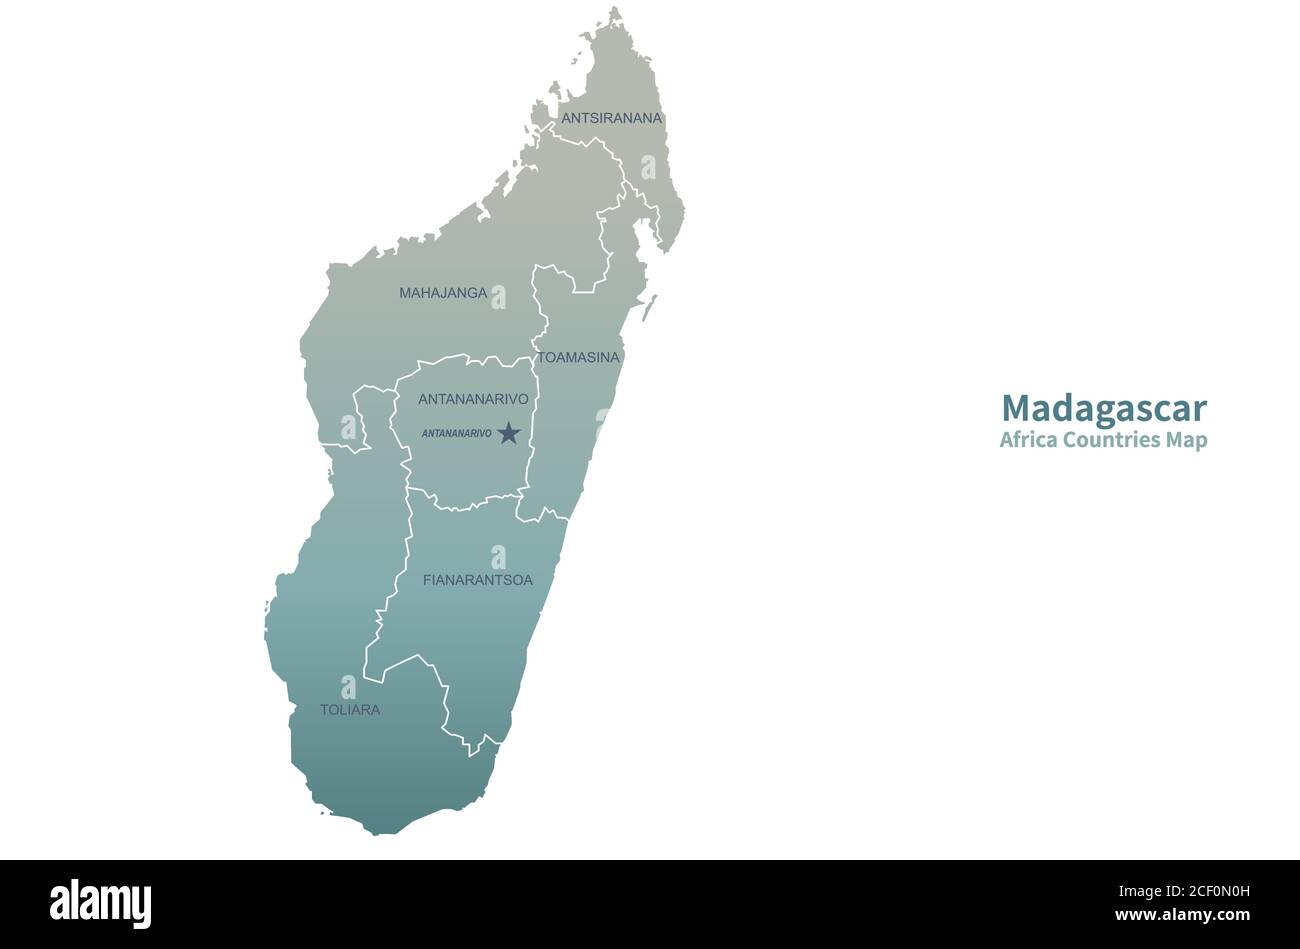 Madagascar Mappa vettoriale. Mappa dei paesi africani. Illustrazione Vettoriale